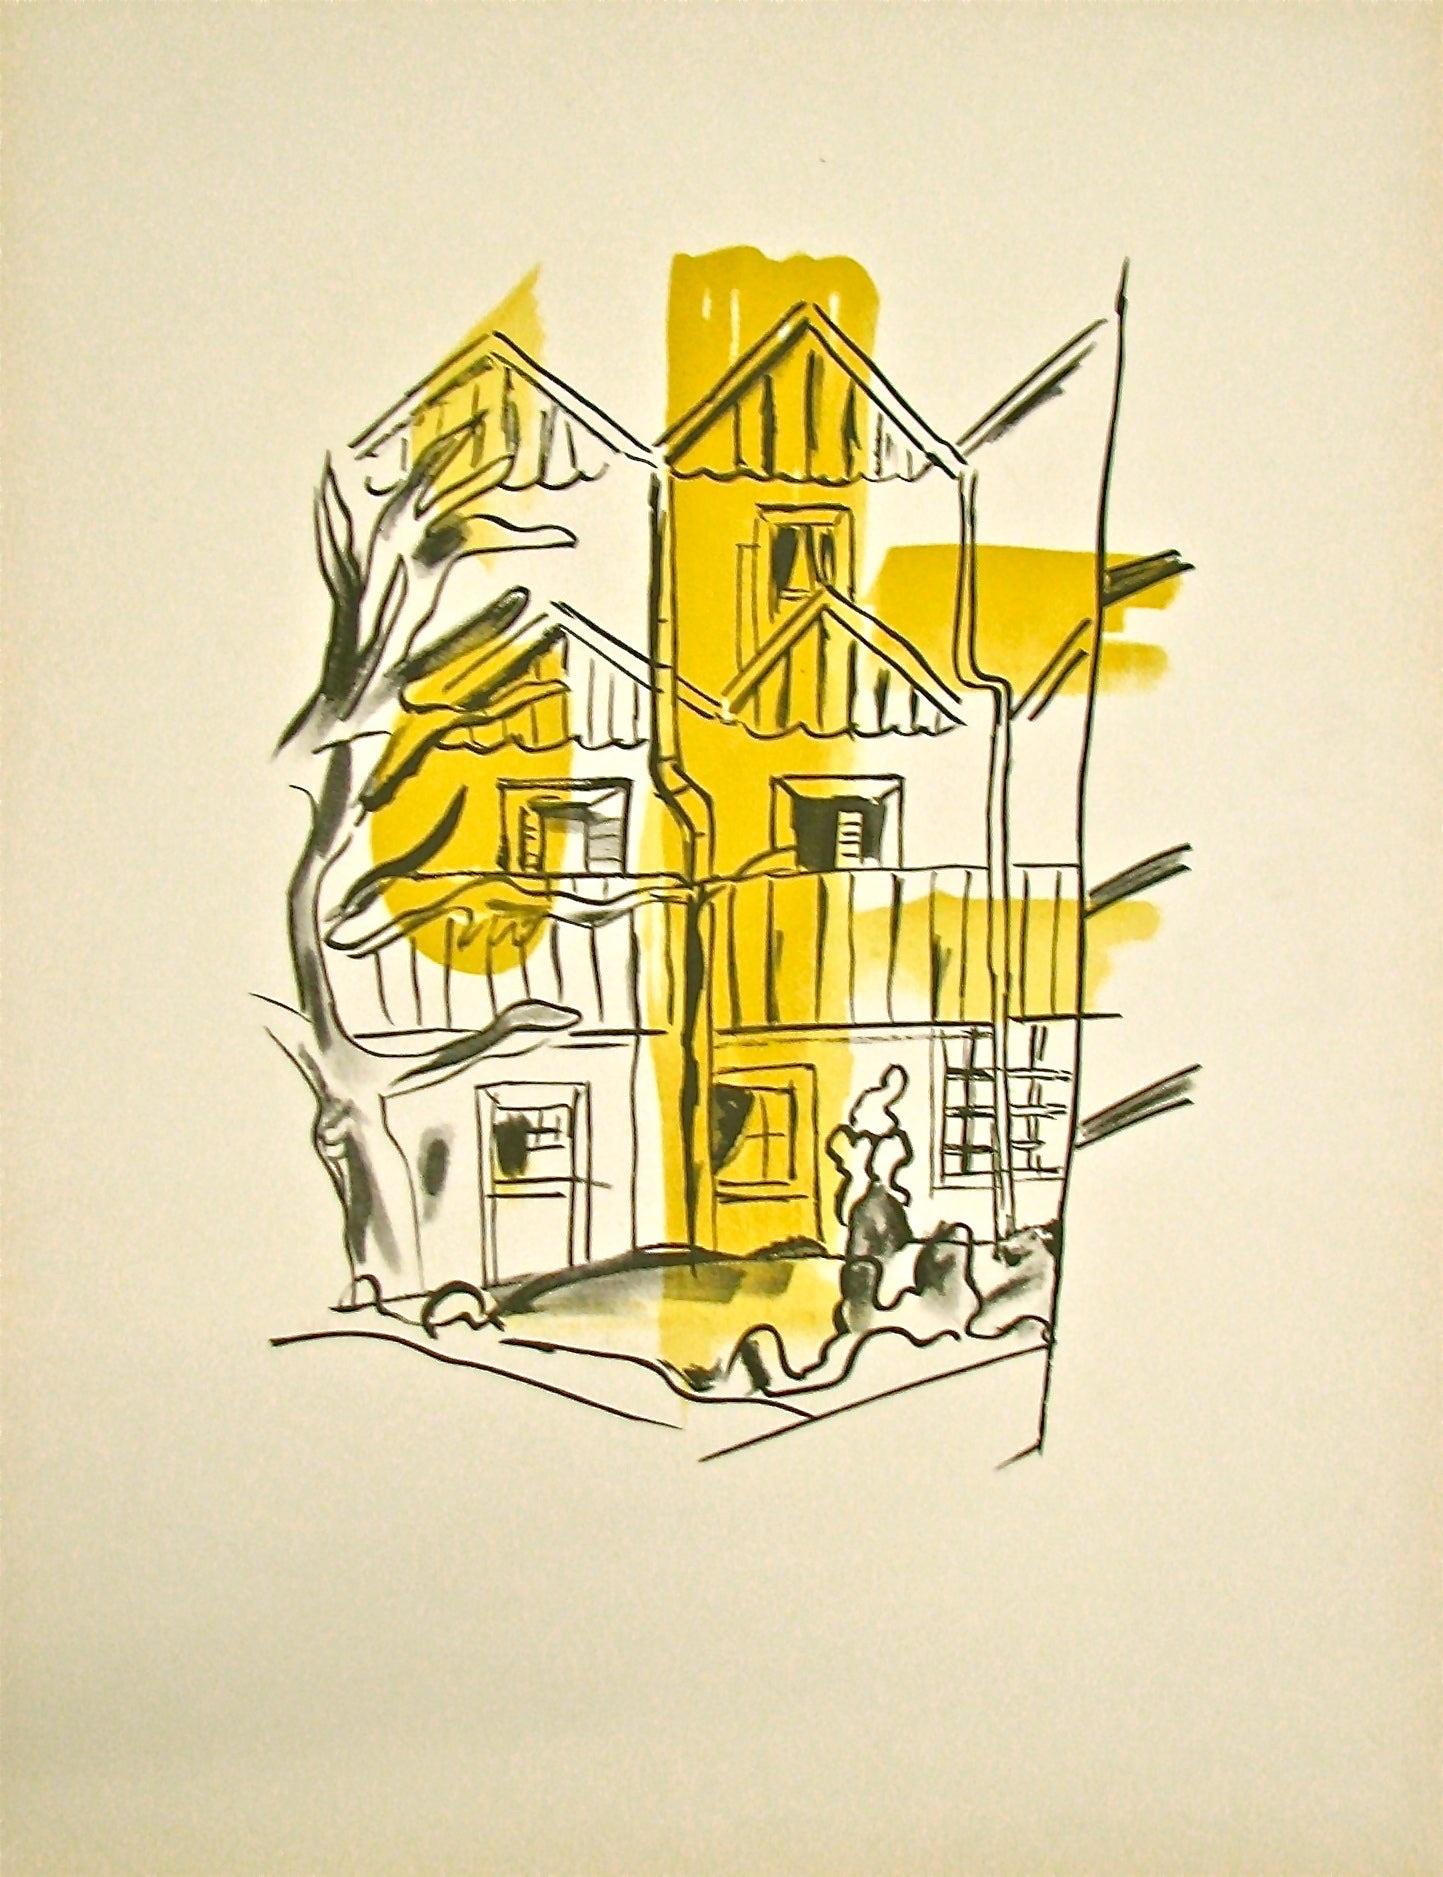 Artiste : Fernand Léger

Médium : Lithographie, 1959 

Dimensions : 26 x 20 in, 66 x 50.8 cm

Papier Arches - Bon état A

Cette lithographie de Fernand Léger est tirée du portfolio intitulé "La Ville", qui se compose de 29 lithographies présentant